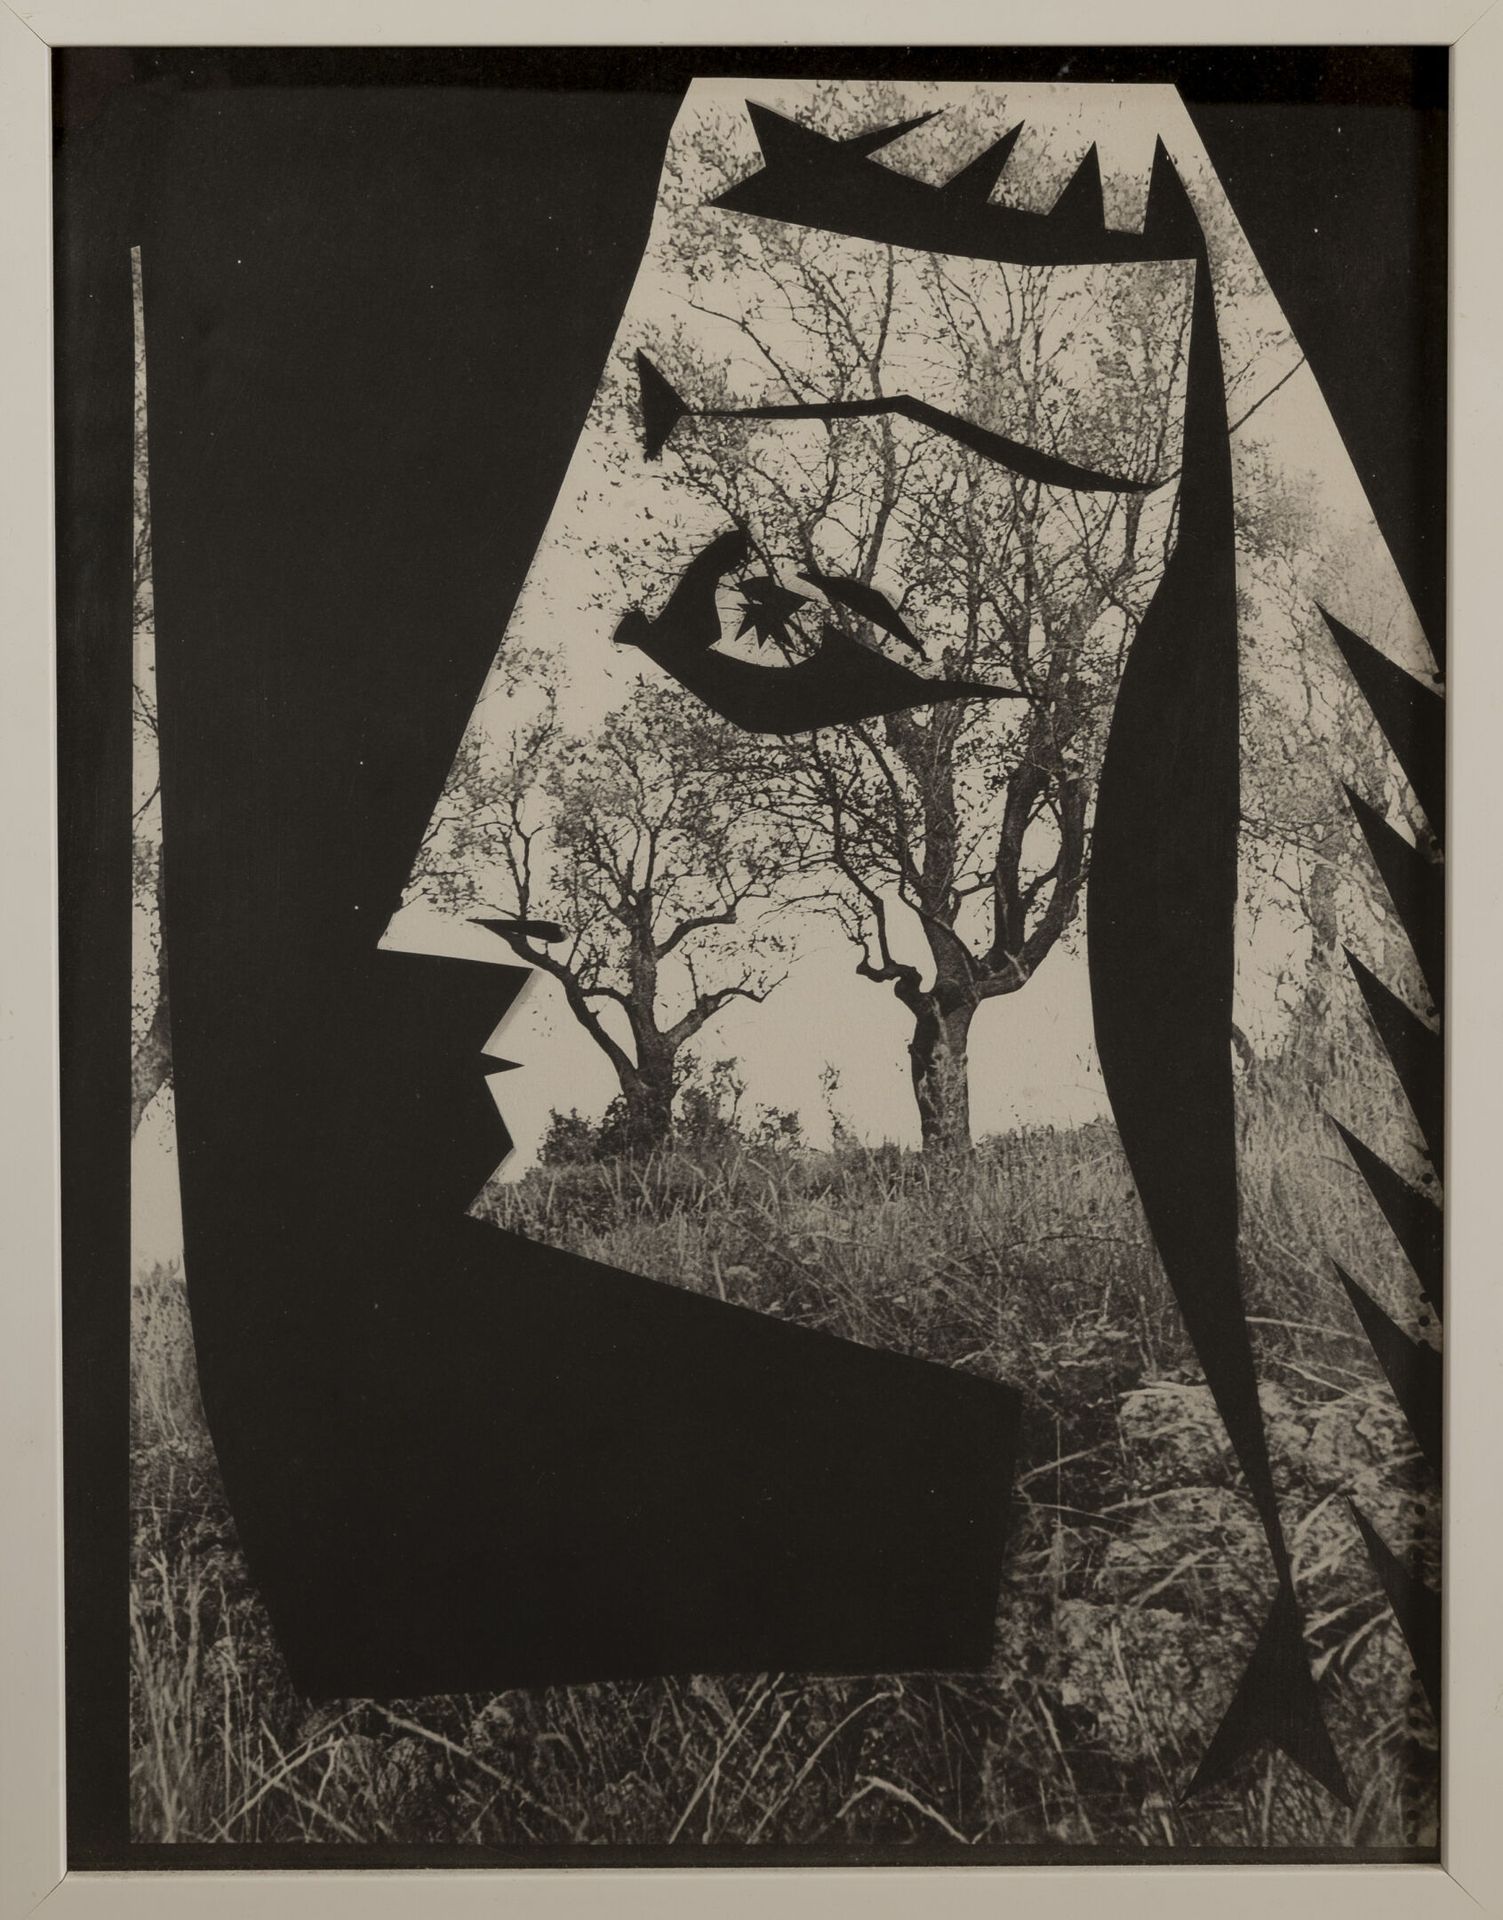 D'aprés Pablo Picasso (1881-1973) Jacqueline an den Bäumen.

Lithografie in Schw&hellip;